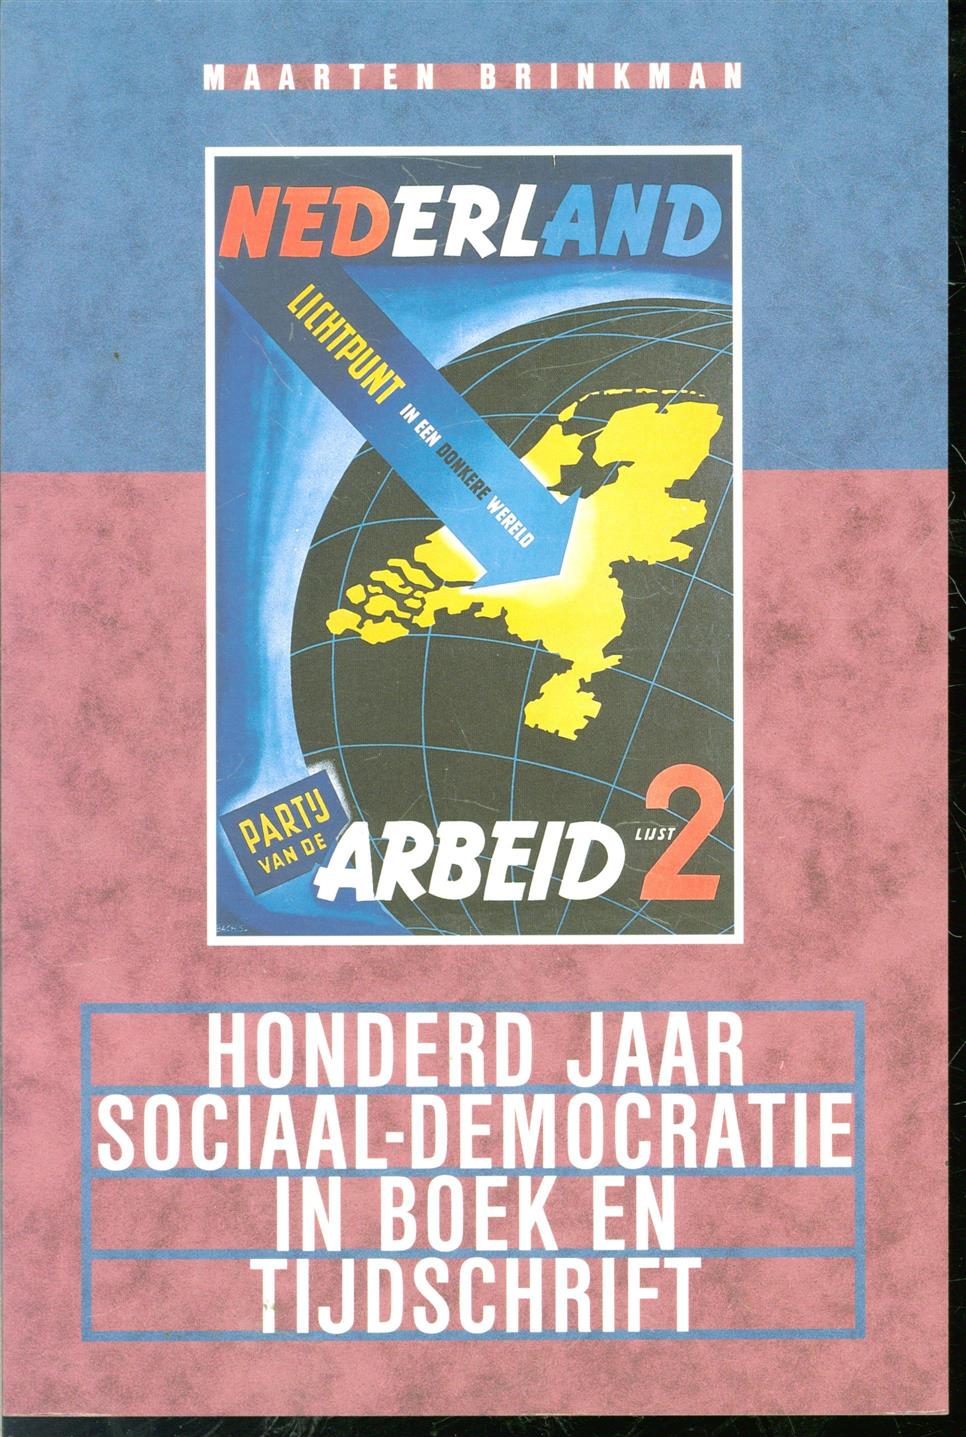 Brinkman, Maarten - Honderd jaar sociaal-democratie in boek en tijdschrift, bibliografie van de geschiedenis van de SDAP en de PvdA, 1894-1994